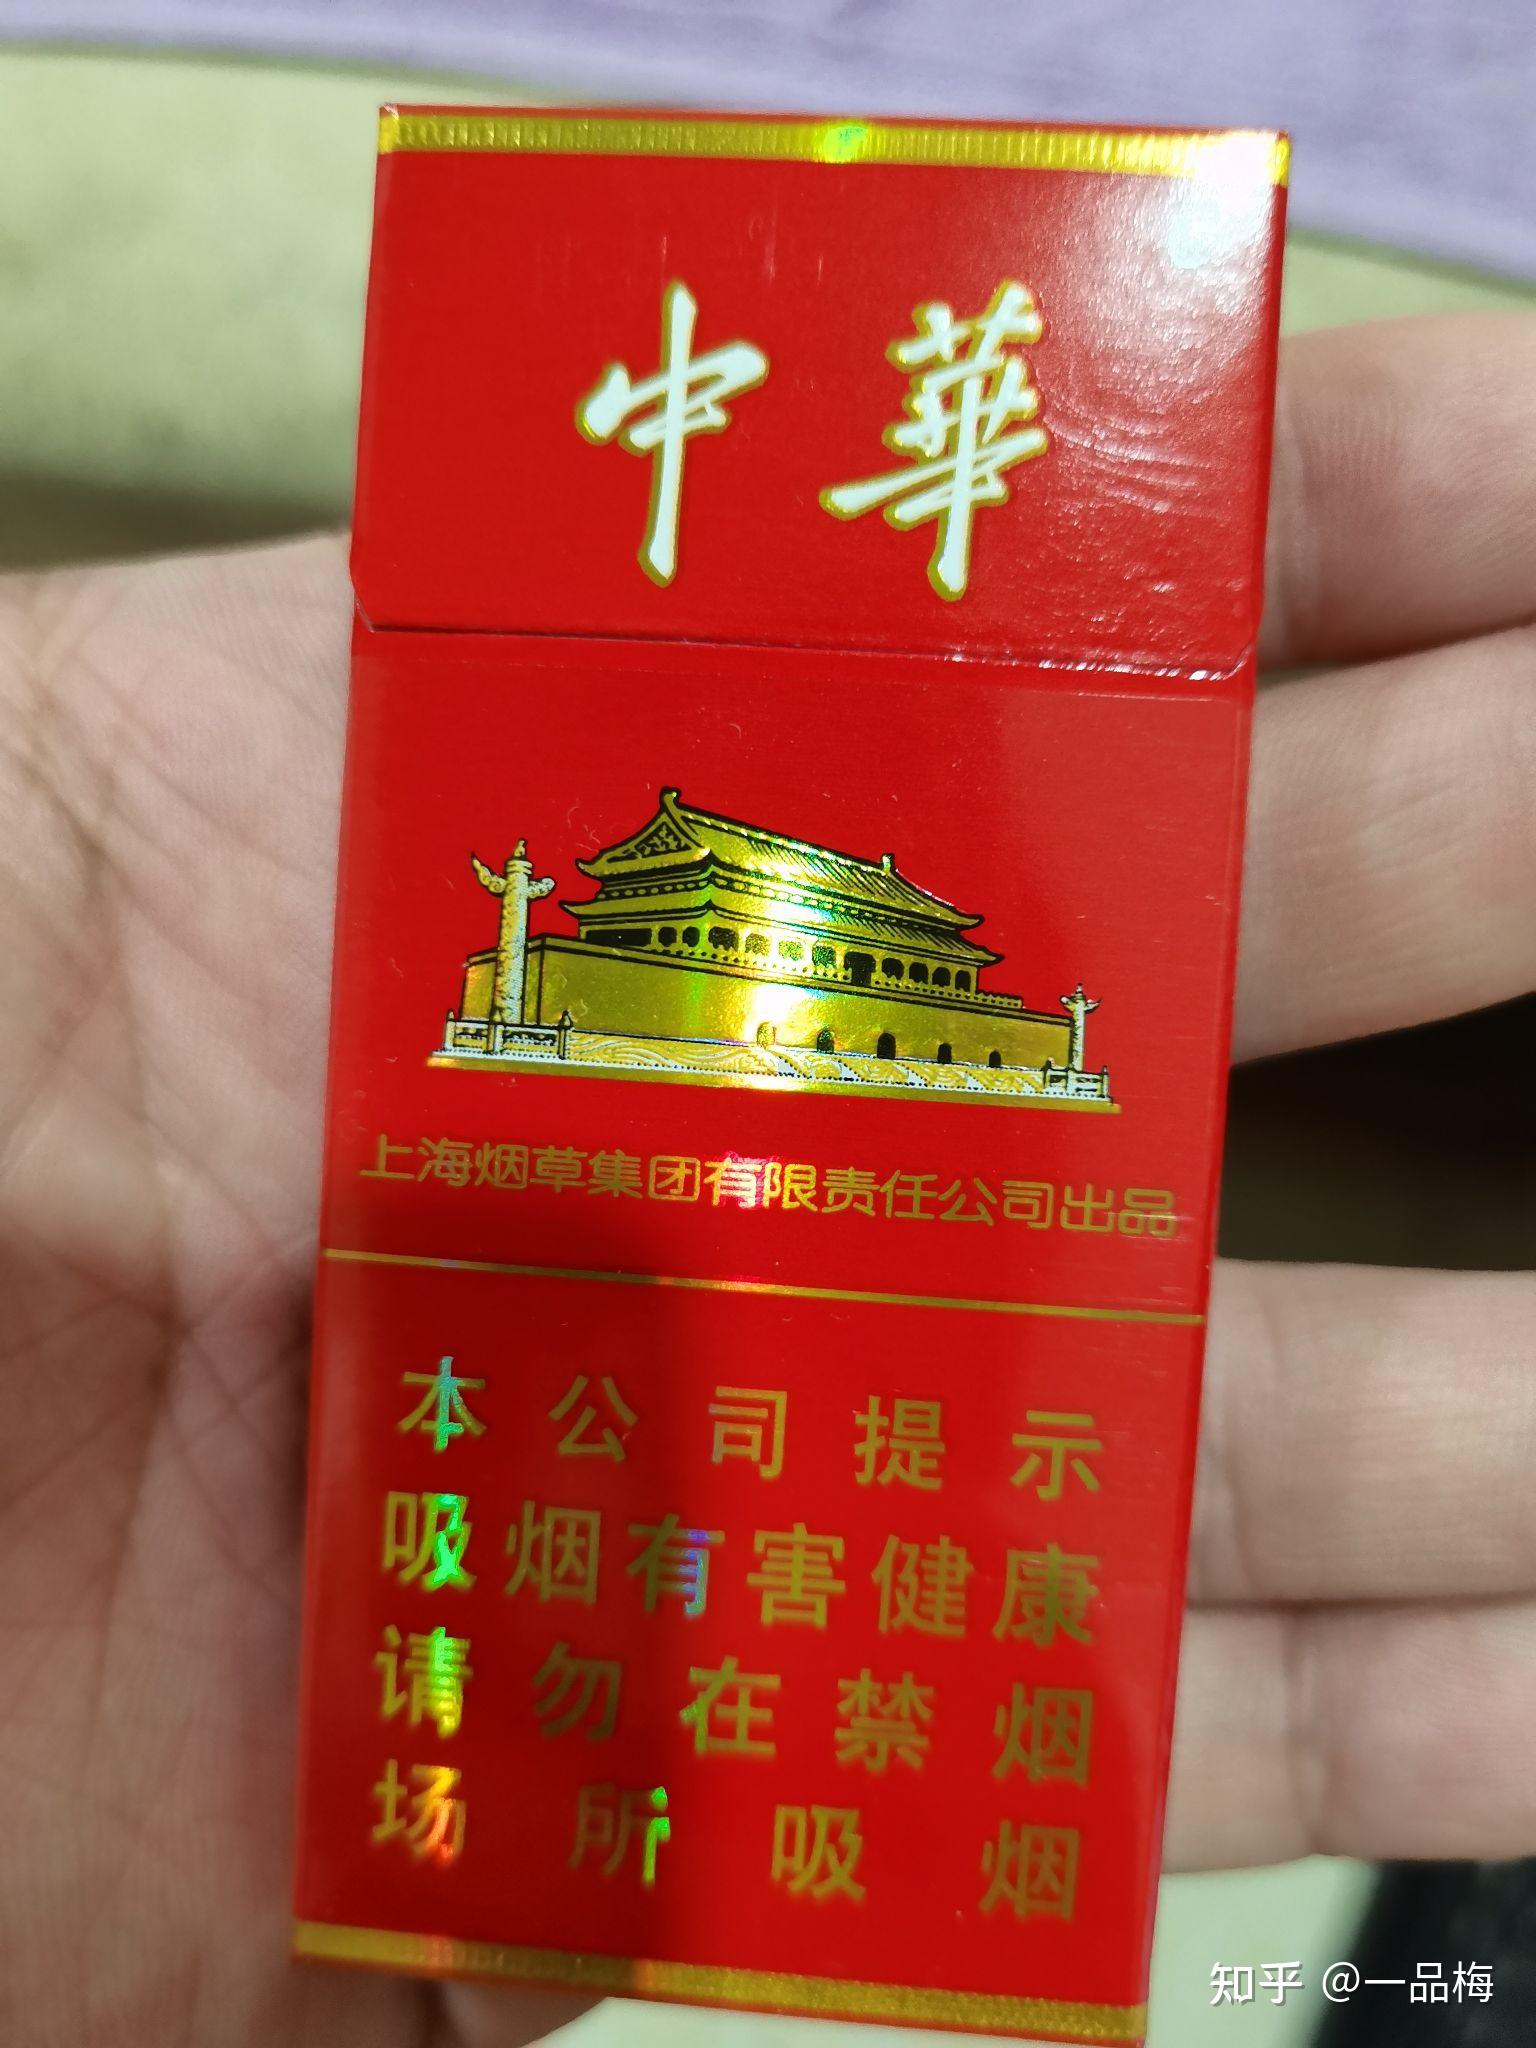 中华烟5支装一盒的和普通的有什么不同? 